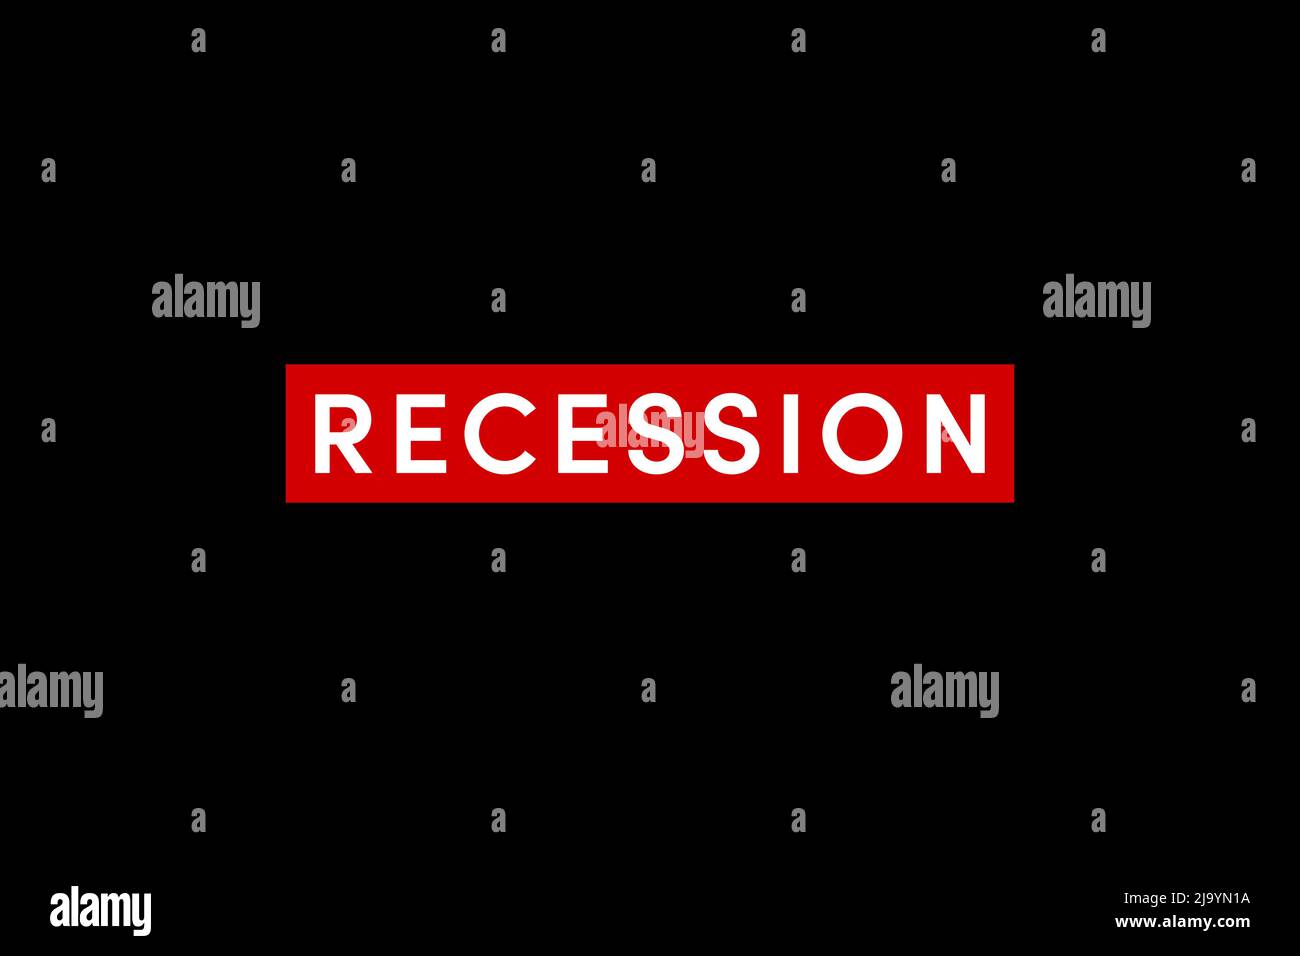 Die Rezession ist ein Rückgang des Konjunkturzyklus, wenn die Konjunktur allgemein nachlässt. Wortrezession auf schwarzem Hintergrund Stockfoto